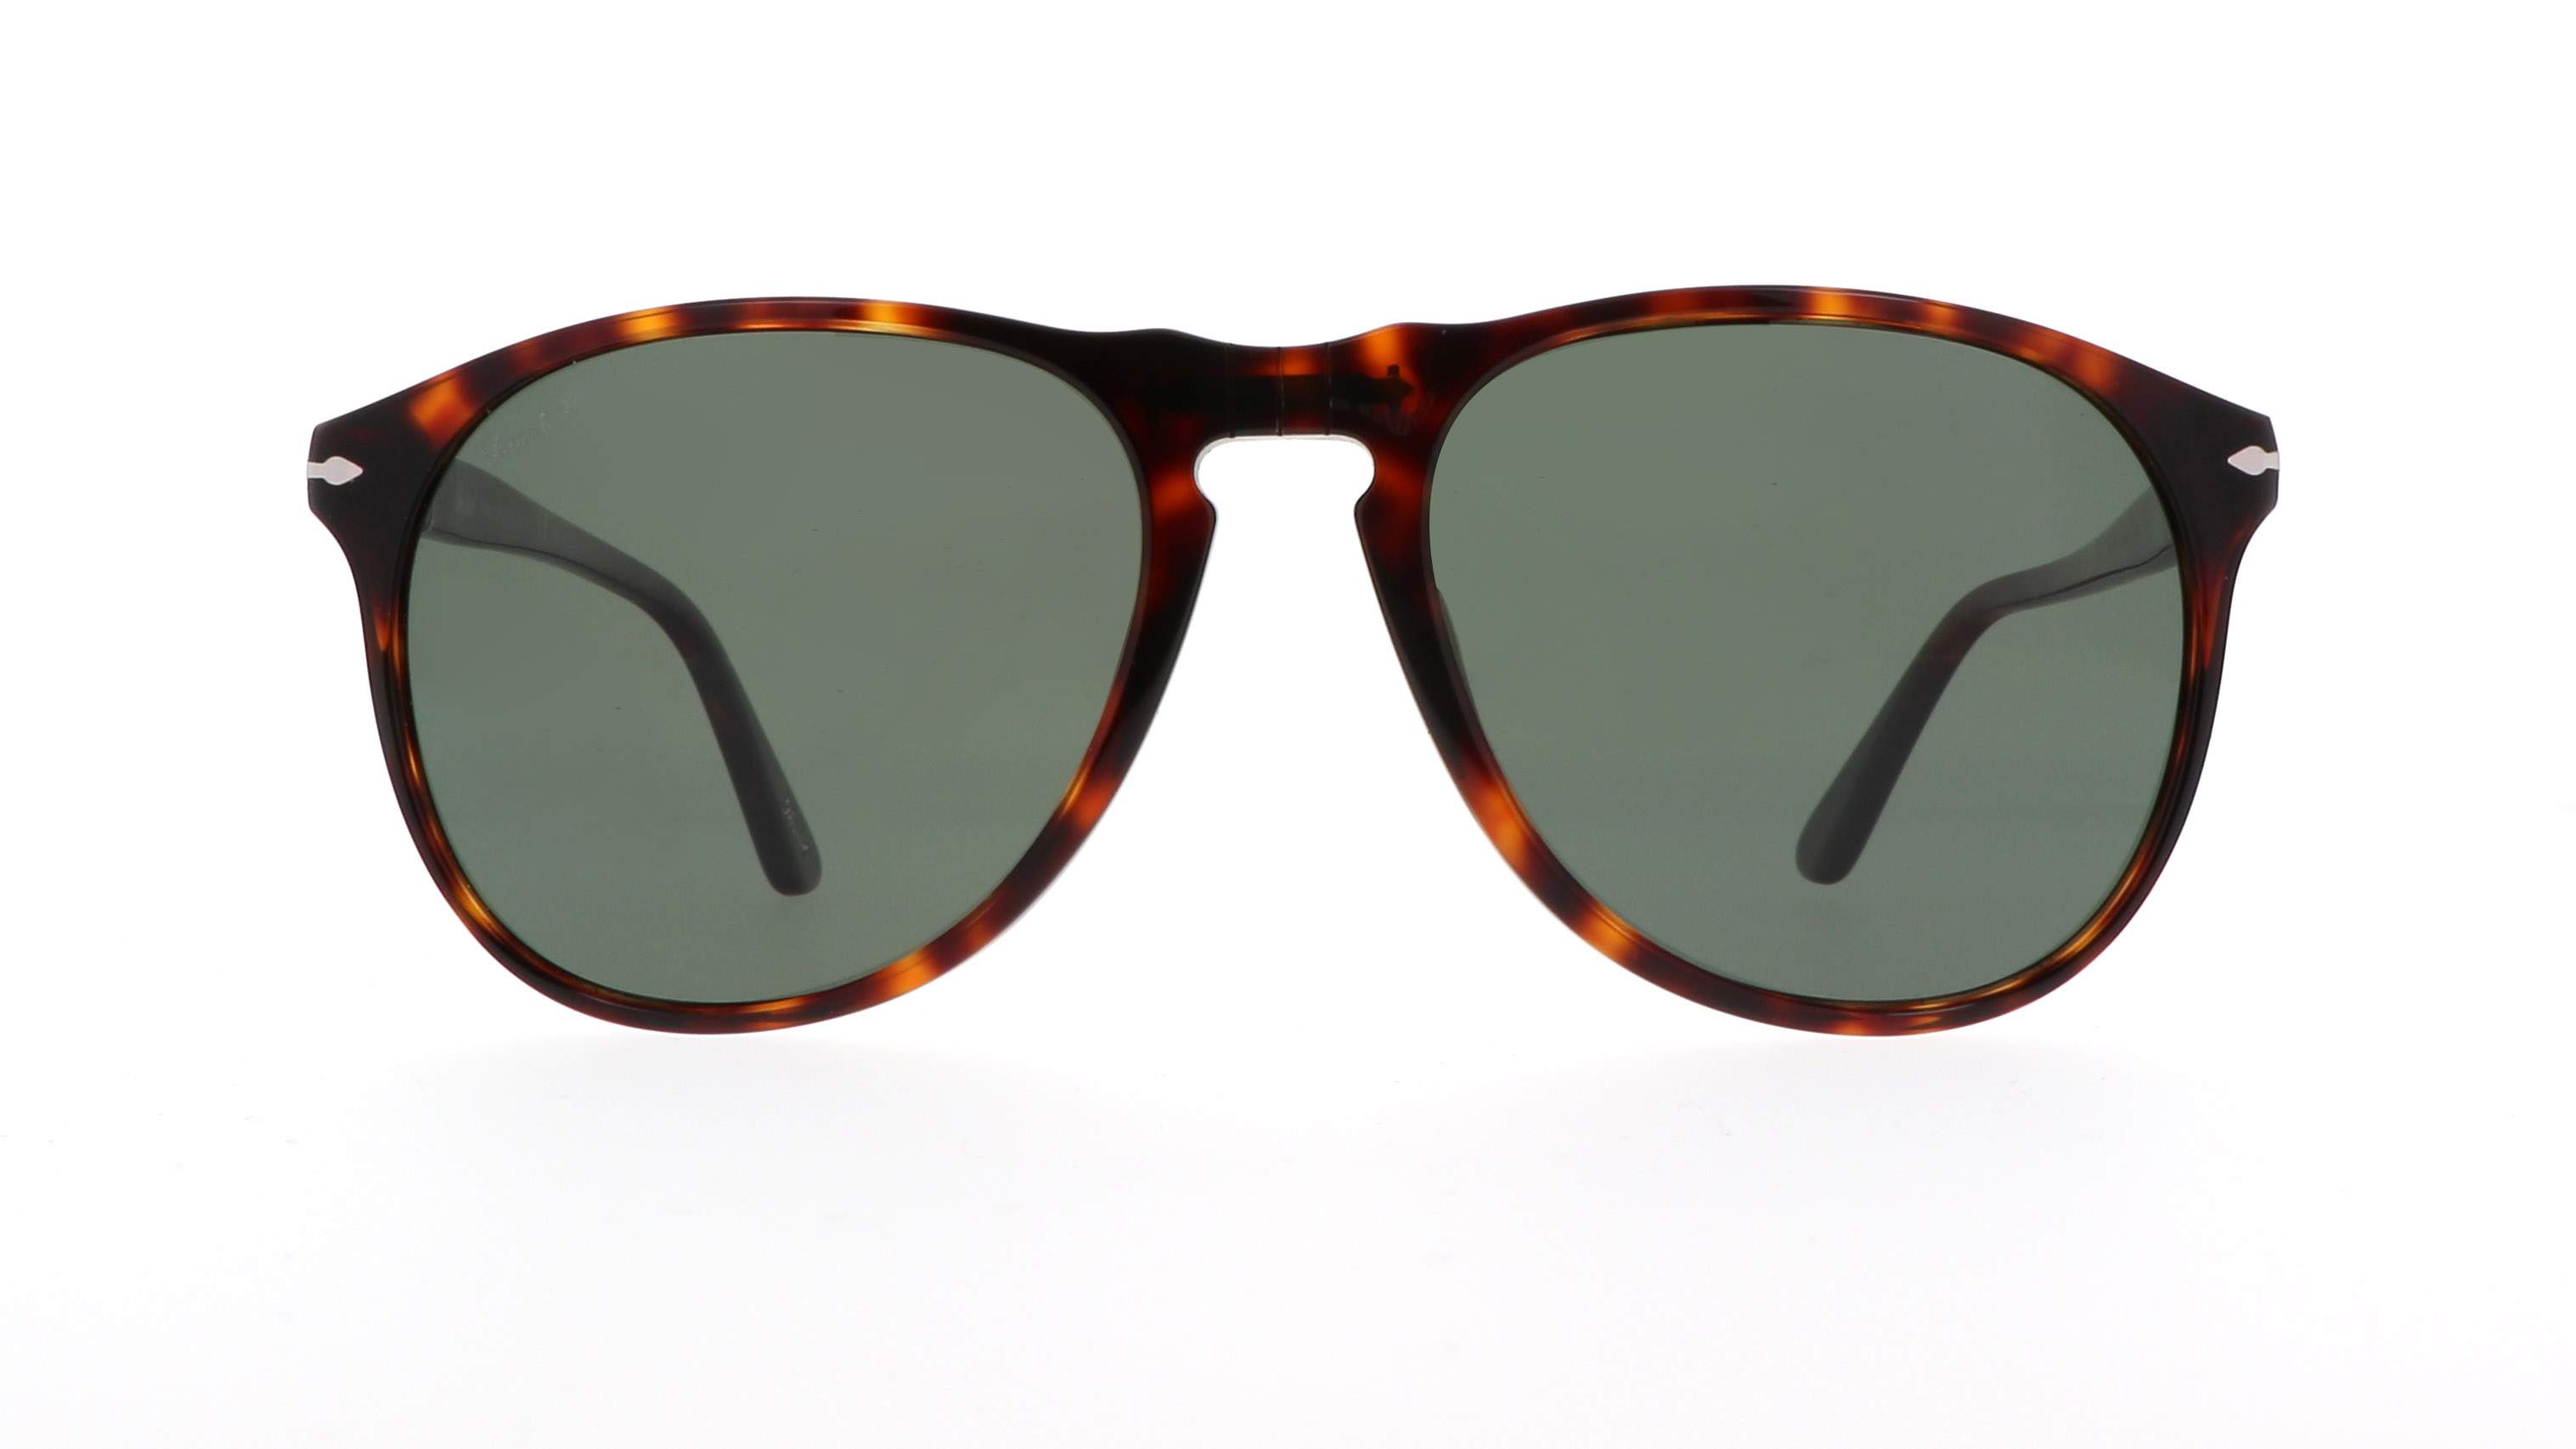 Sunglasses Persol 649 Series Tortoise PO9649S 24/58 55-18 Polarized in ...